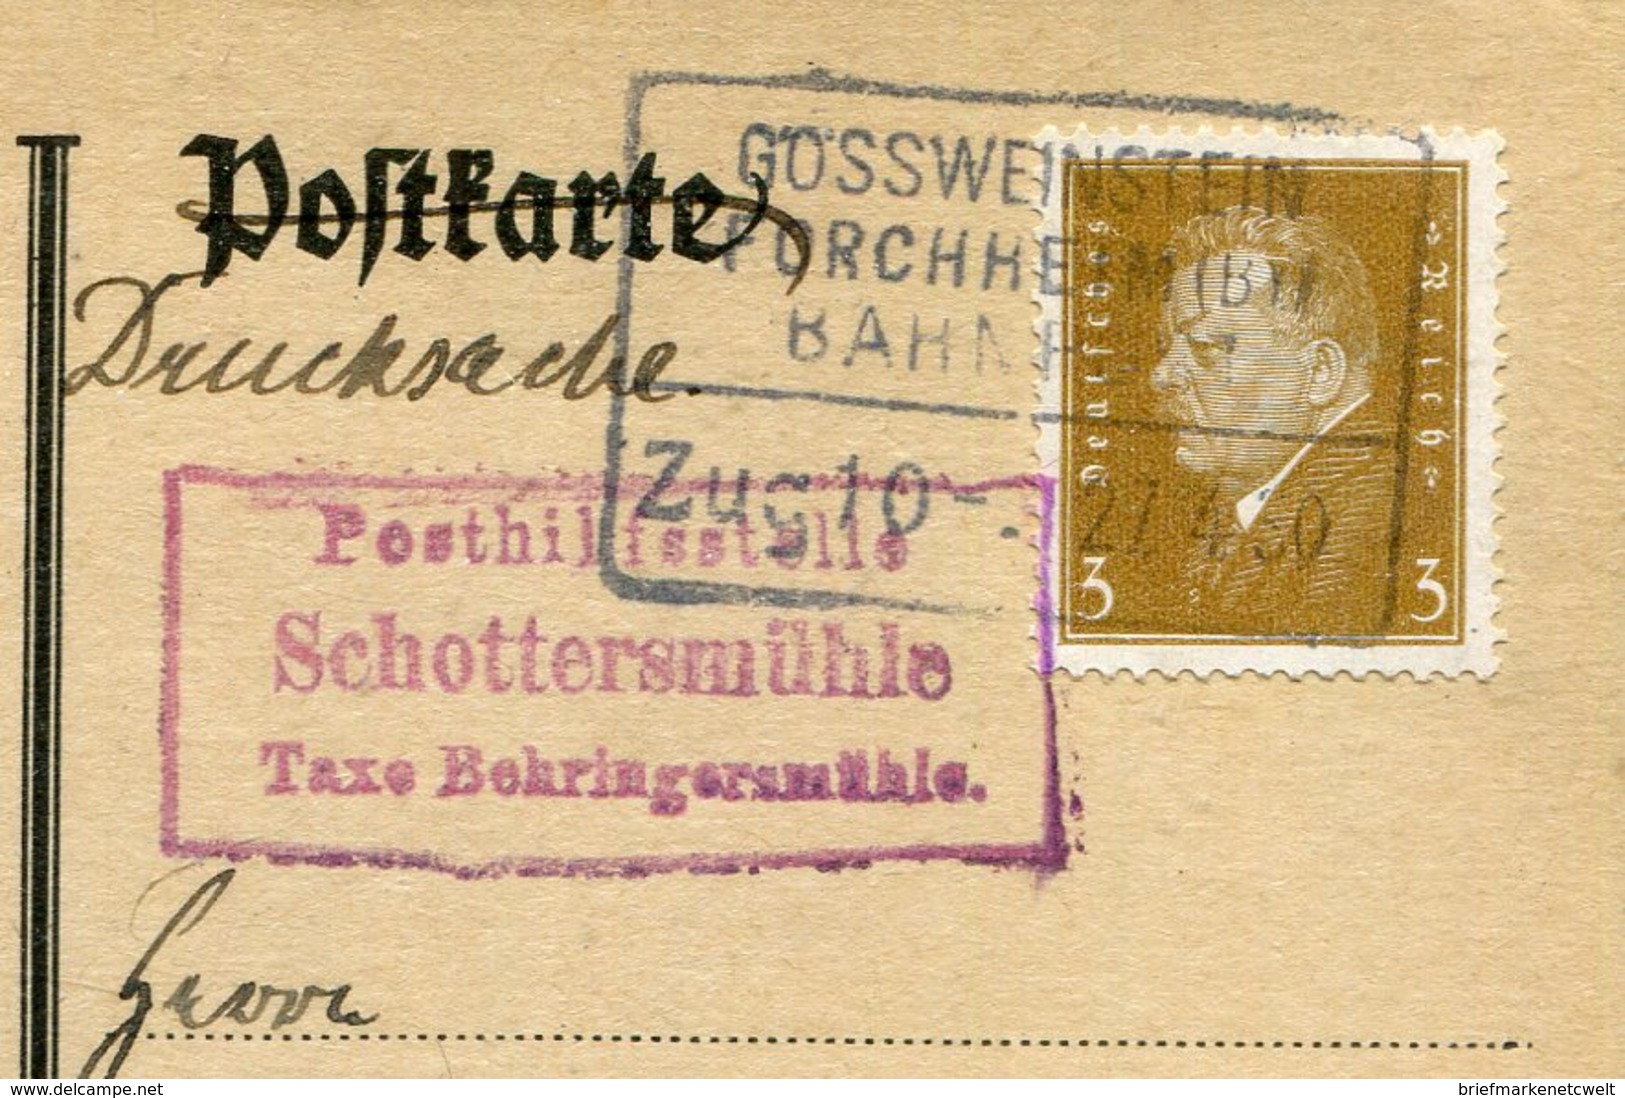 Deutsches Reich / 1930 / Posthilfsstellen-Stempel SCHOTTERMUEHLE U.Bahnpost-Stempel Grossweinstein-Forchheim A.PK (7343) - Briefe U. Dokumente